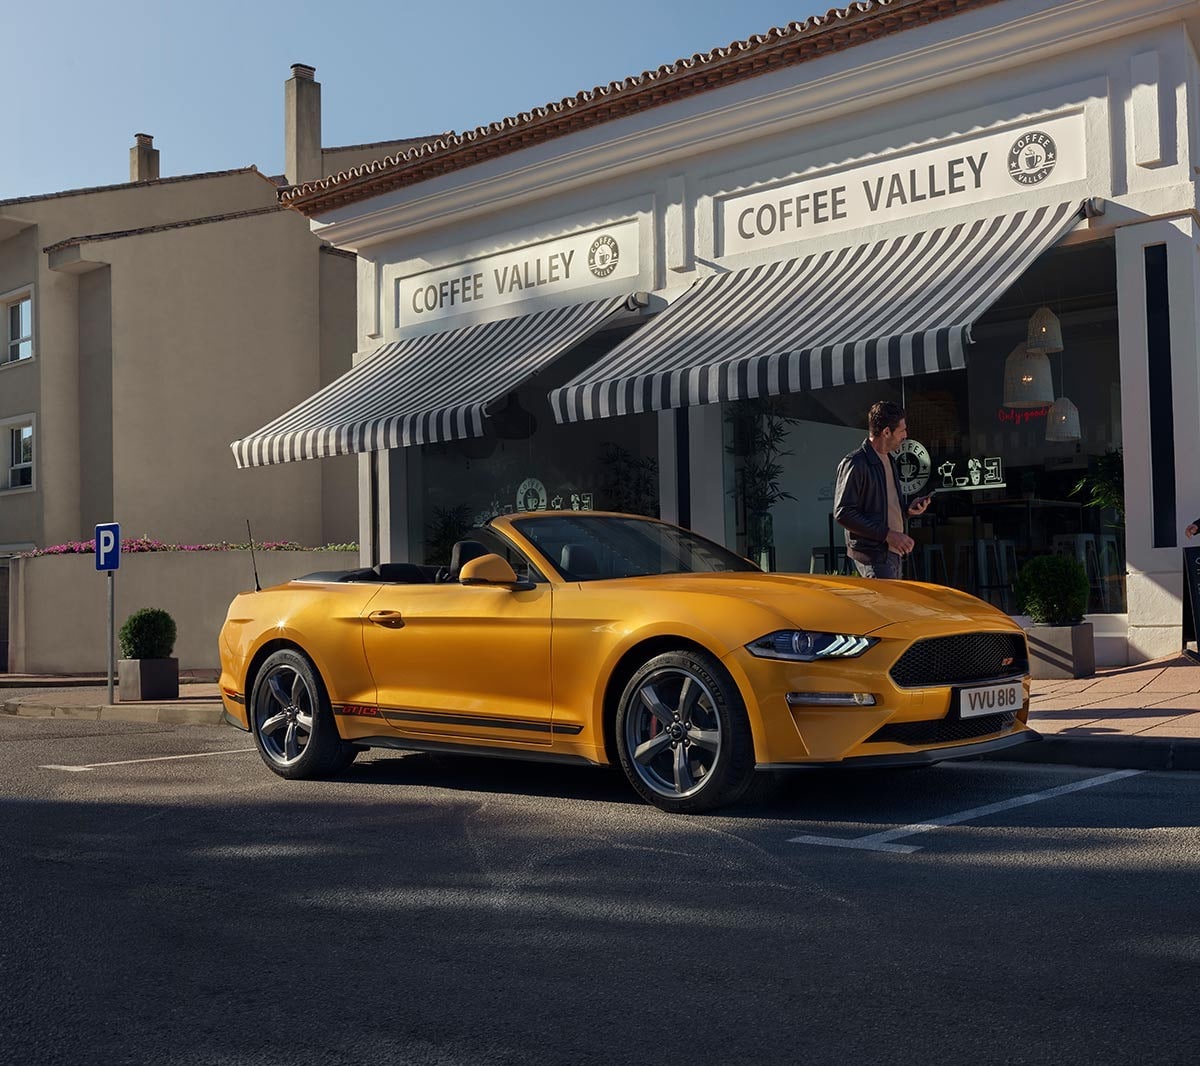 Ford Mustang California couleur orange. Vue de face aux trois quarts, stationnant devant un magasin.